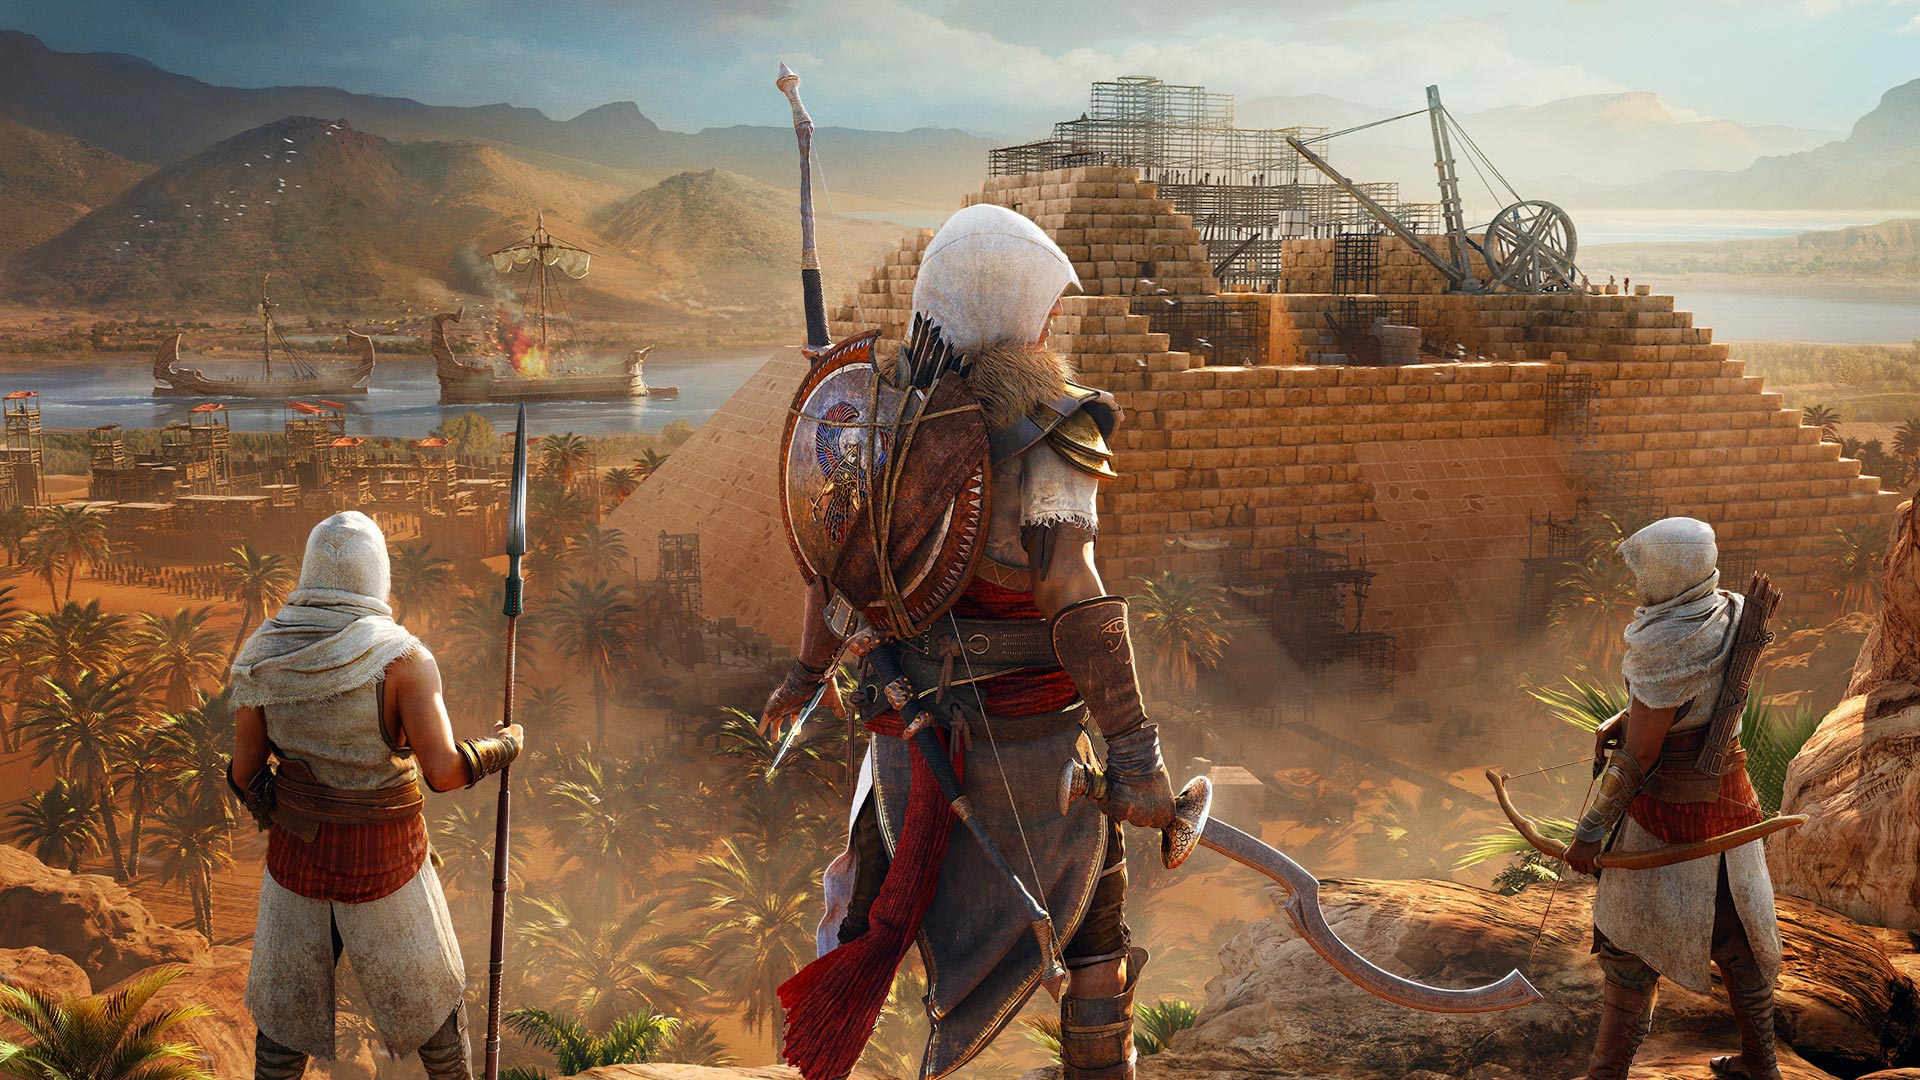 To będzie dobry początek roku dla fanów Assassin’s Creed. Zobaczcie, co szykuje Ubisoft